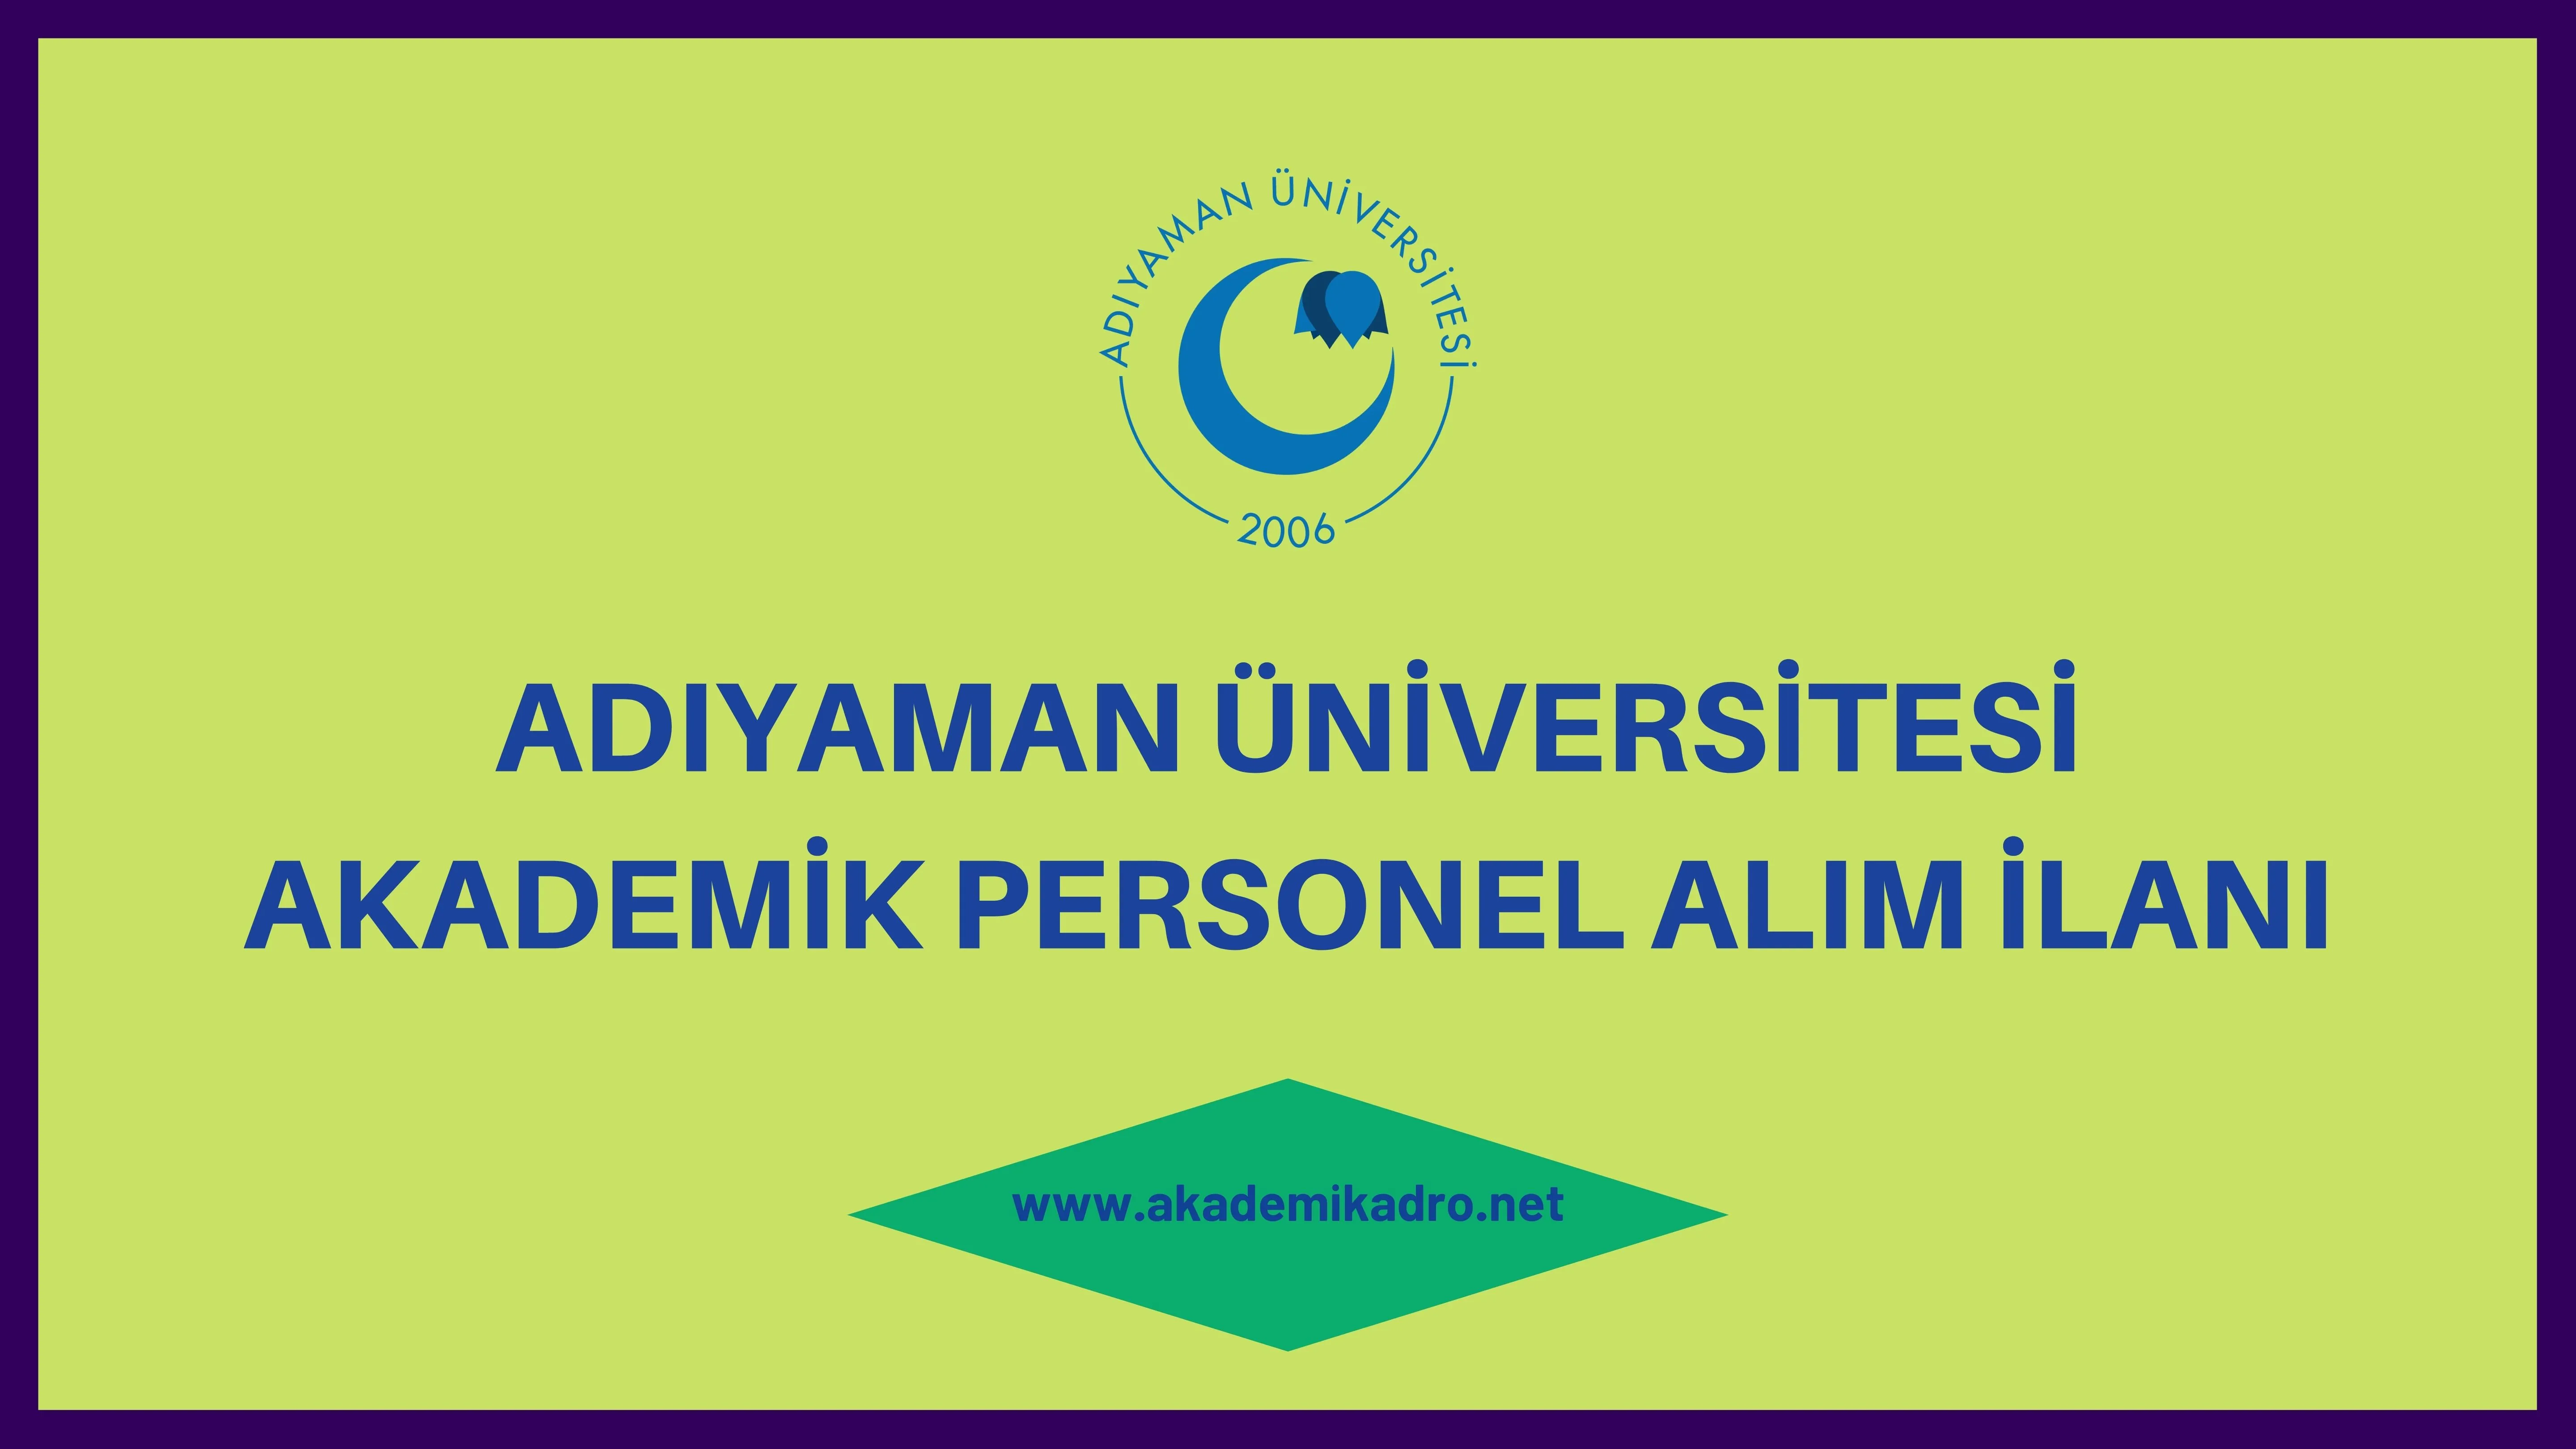 Adıyaman Üniversitesi birçok alandan 25 akademik personel alacak.